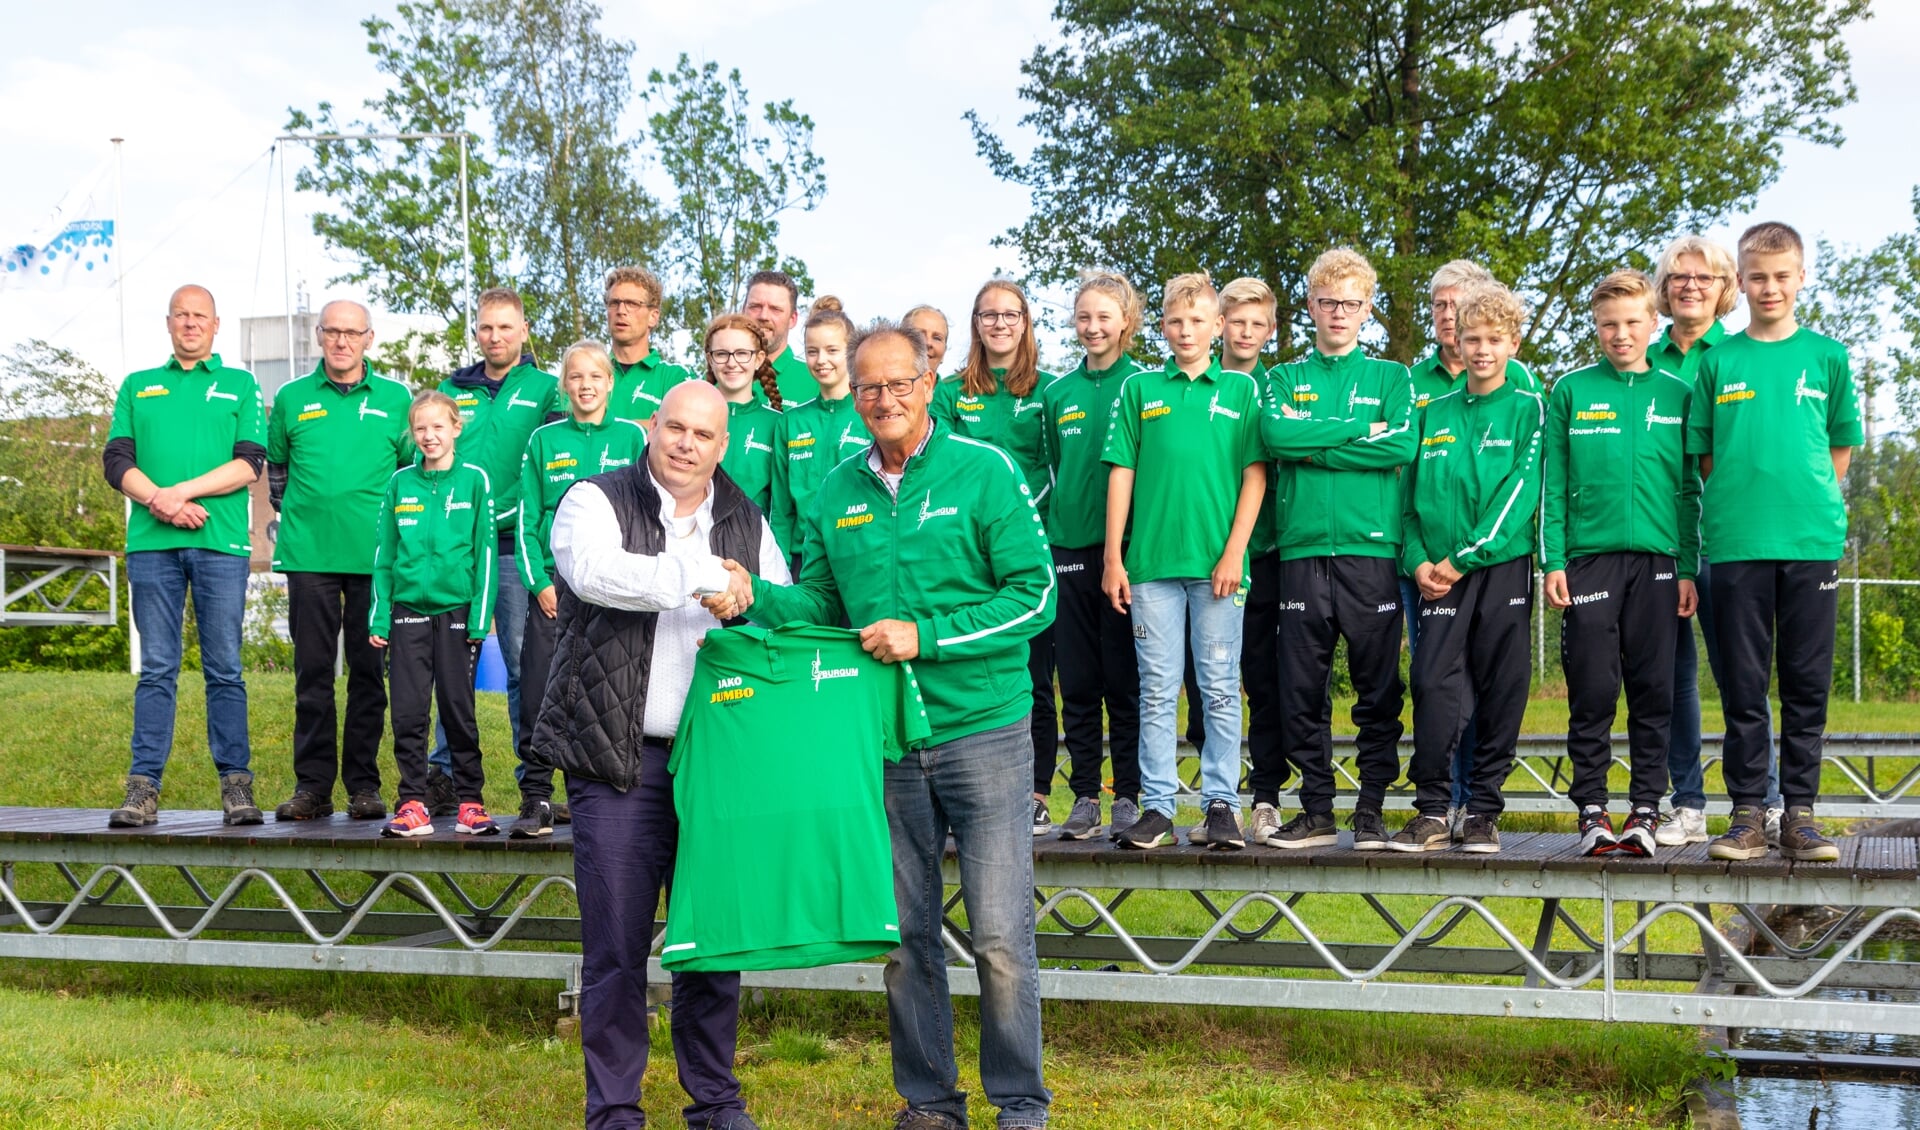 Johan Postma, bedrijfsleider van Jumbo Burgum (links voor), overhandigt het nieuwe clubshirt aan Hans Helmholt, voorzitter van Ljeppersclub Burgum. Op de schans staan leden en vrijwilligers van de club.